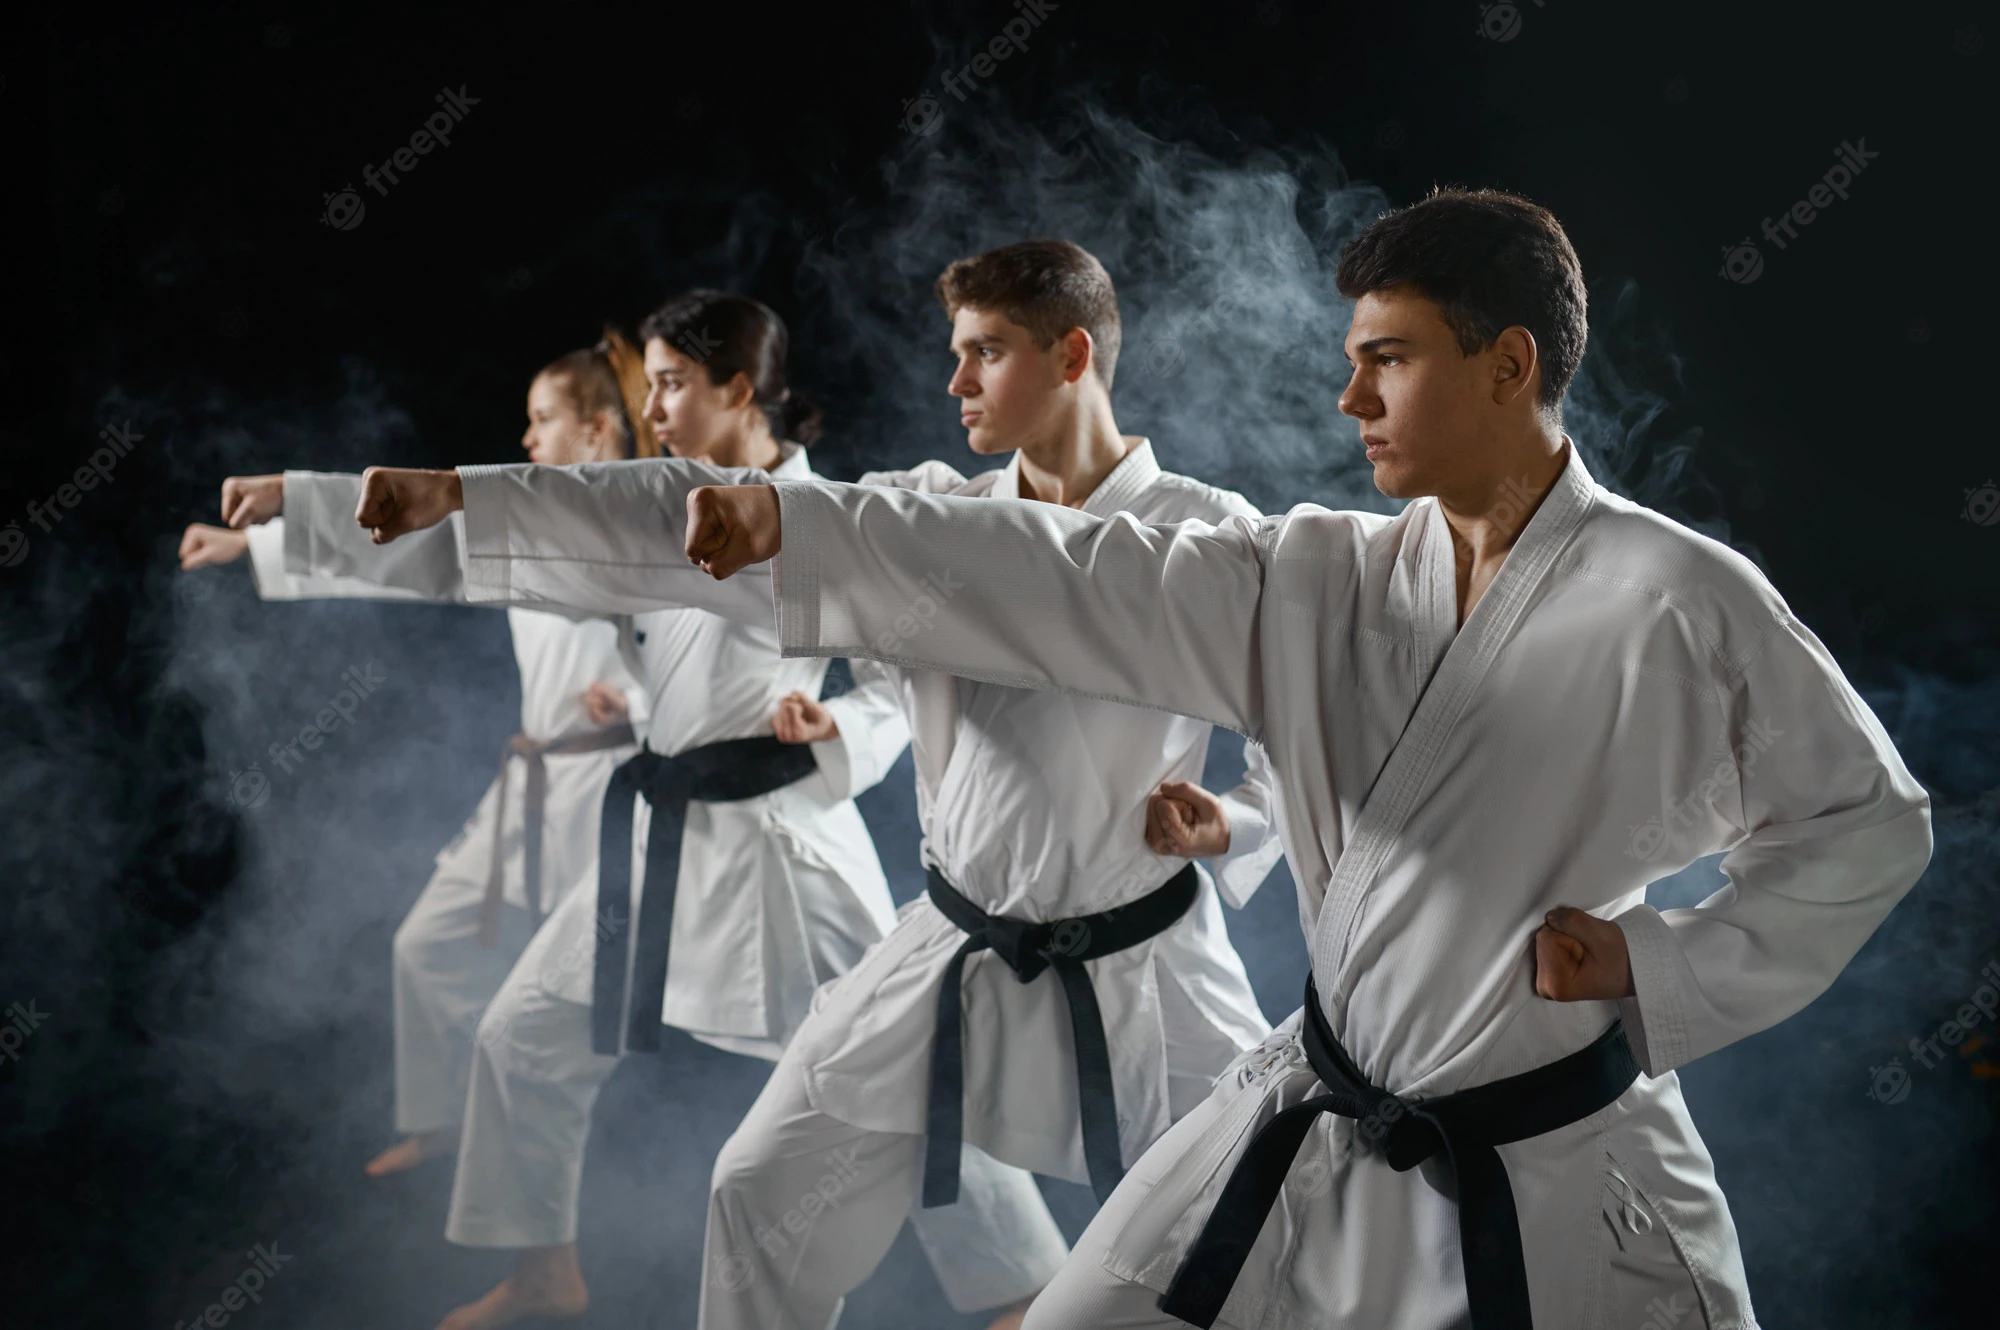 four-karate-fighters-poses-white-kimono-group-training-karatekas-workout-martial-arts_266732-21075